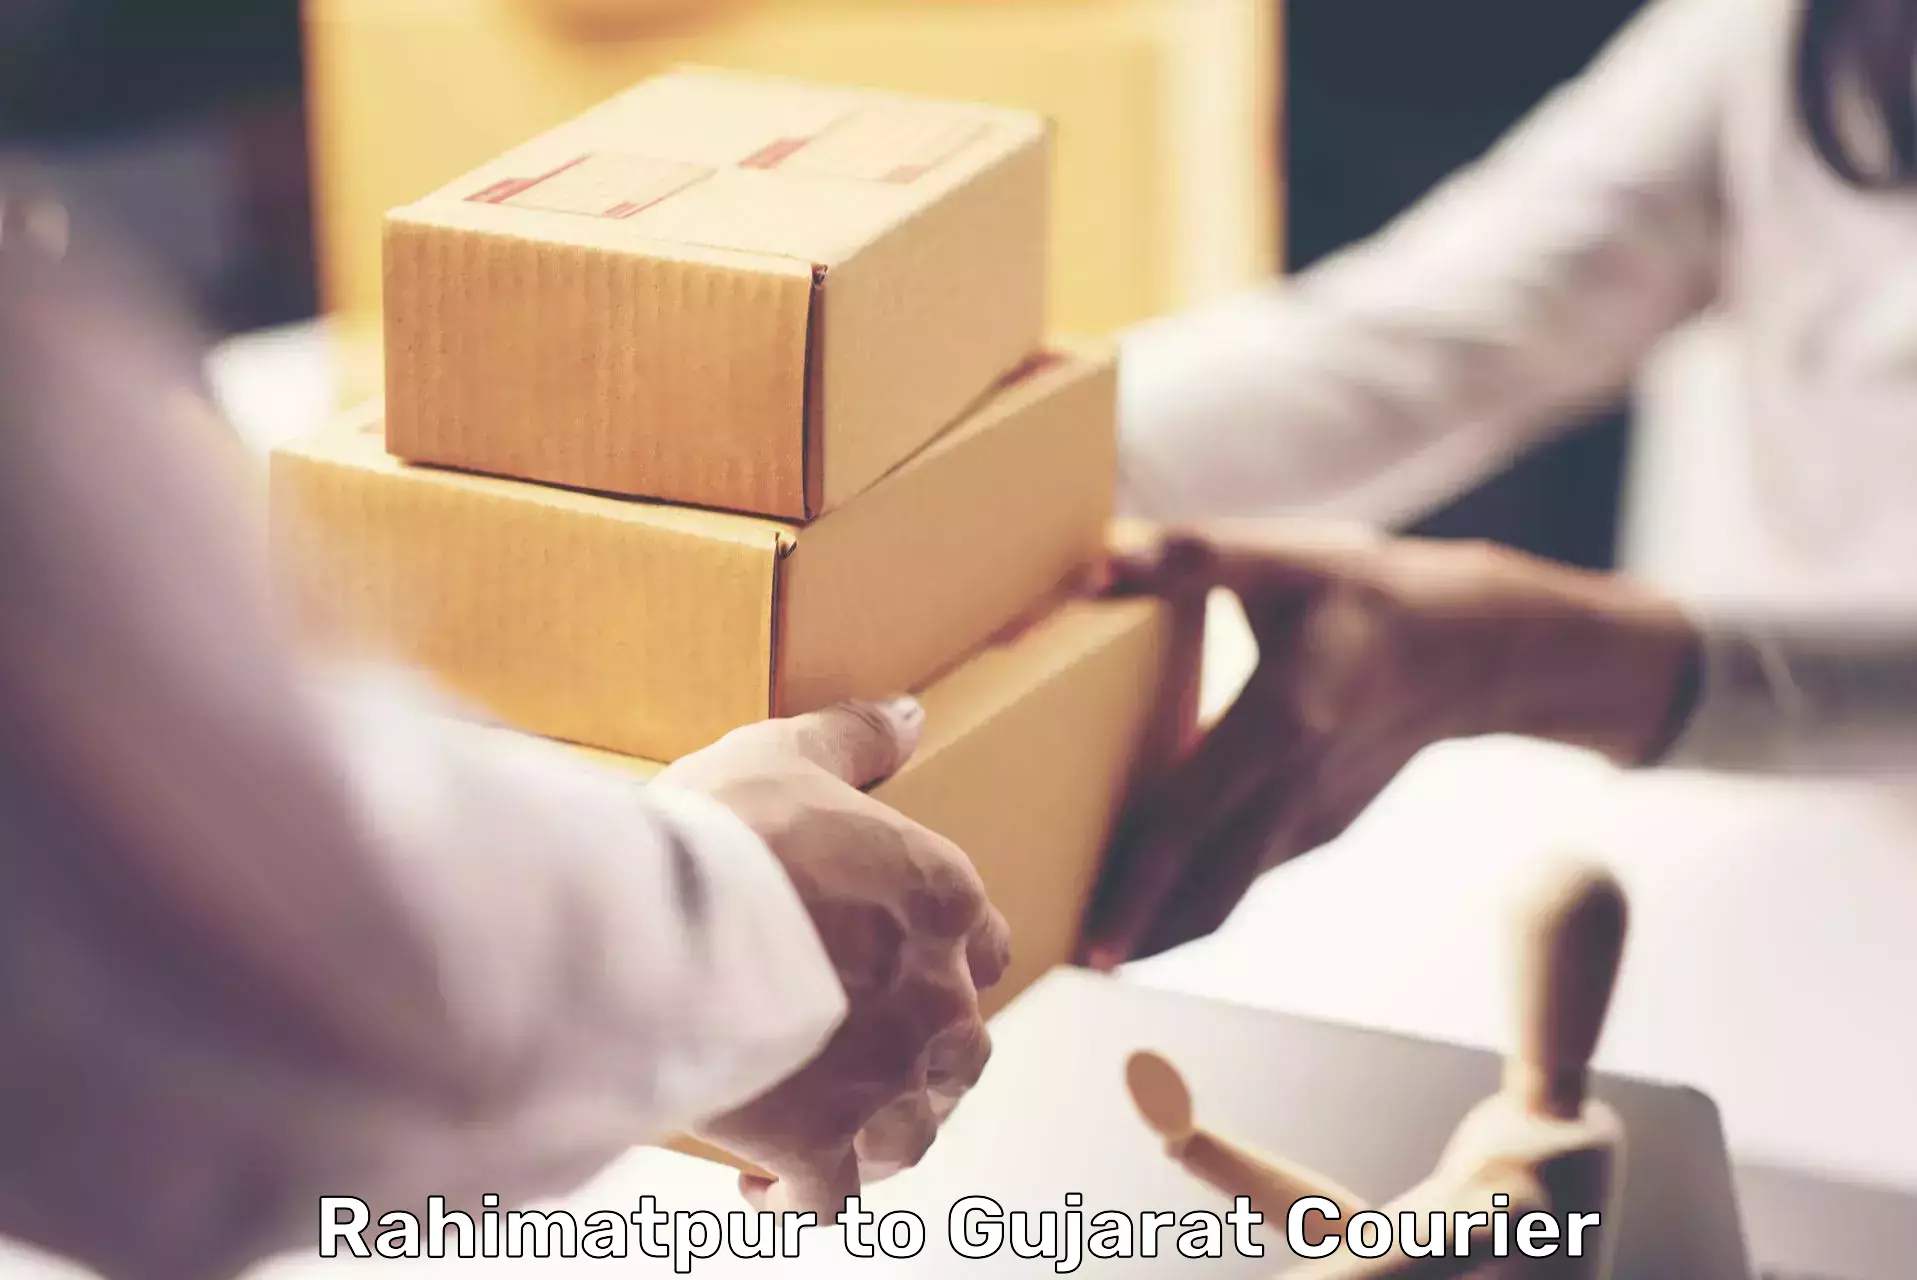 Global shipping solutions Rahimatpur to Ahwa